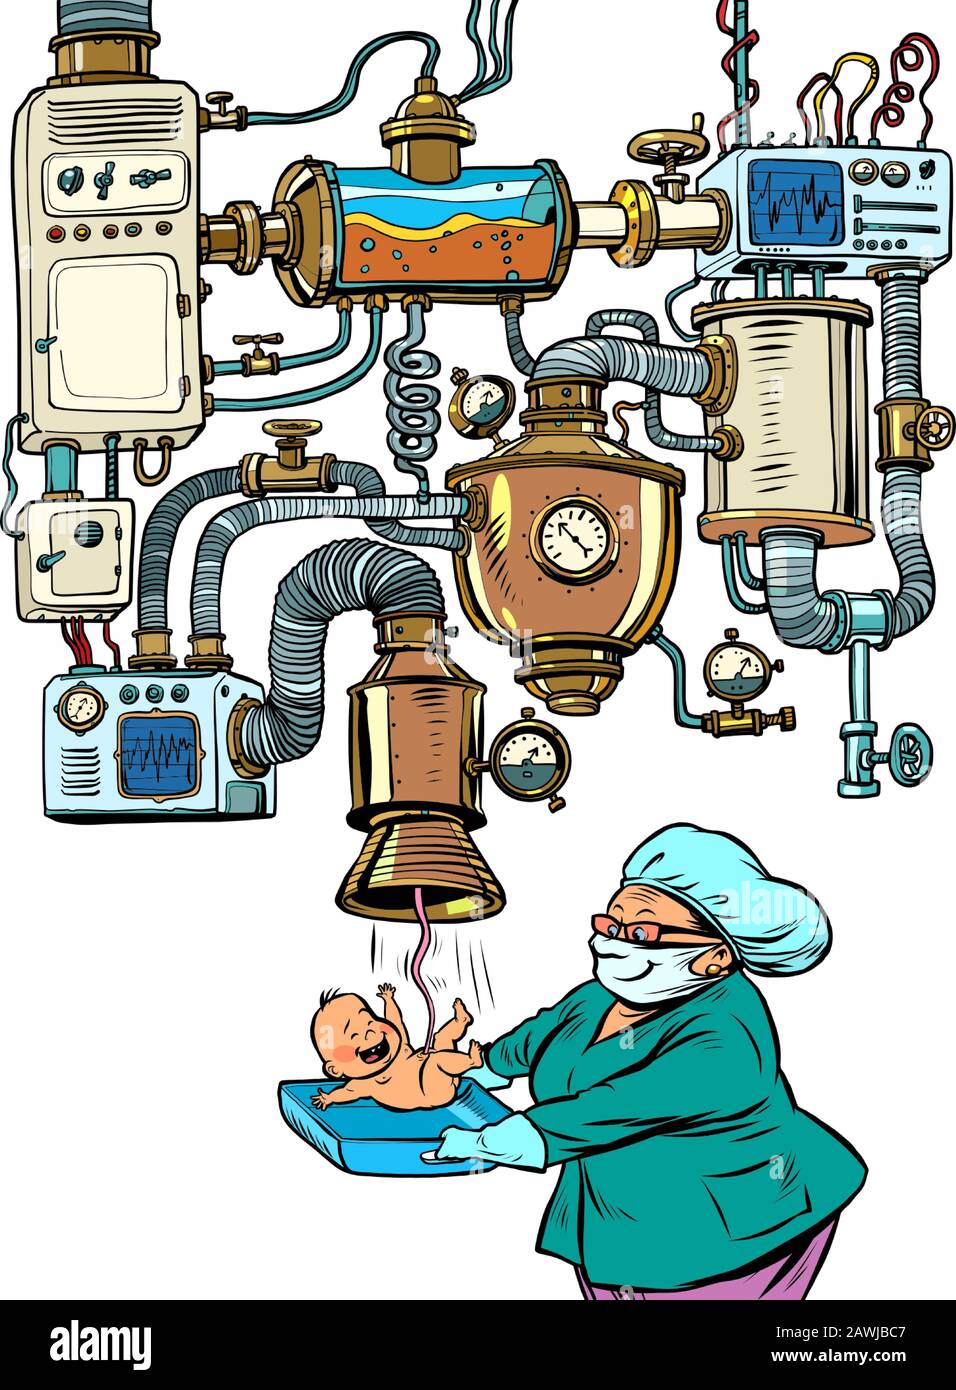 Partera y recién nacido, concepto de hospital de maternidad, embarazo artificial Ilustración del Vector